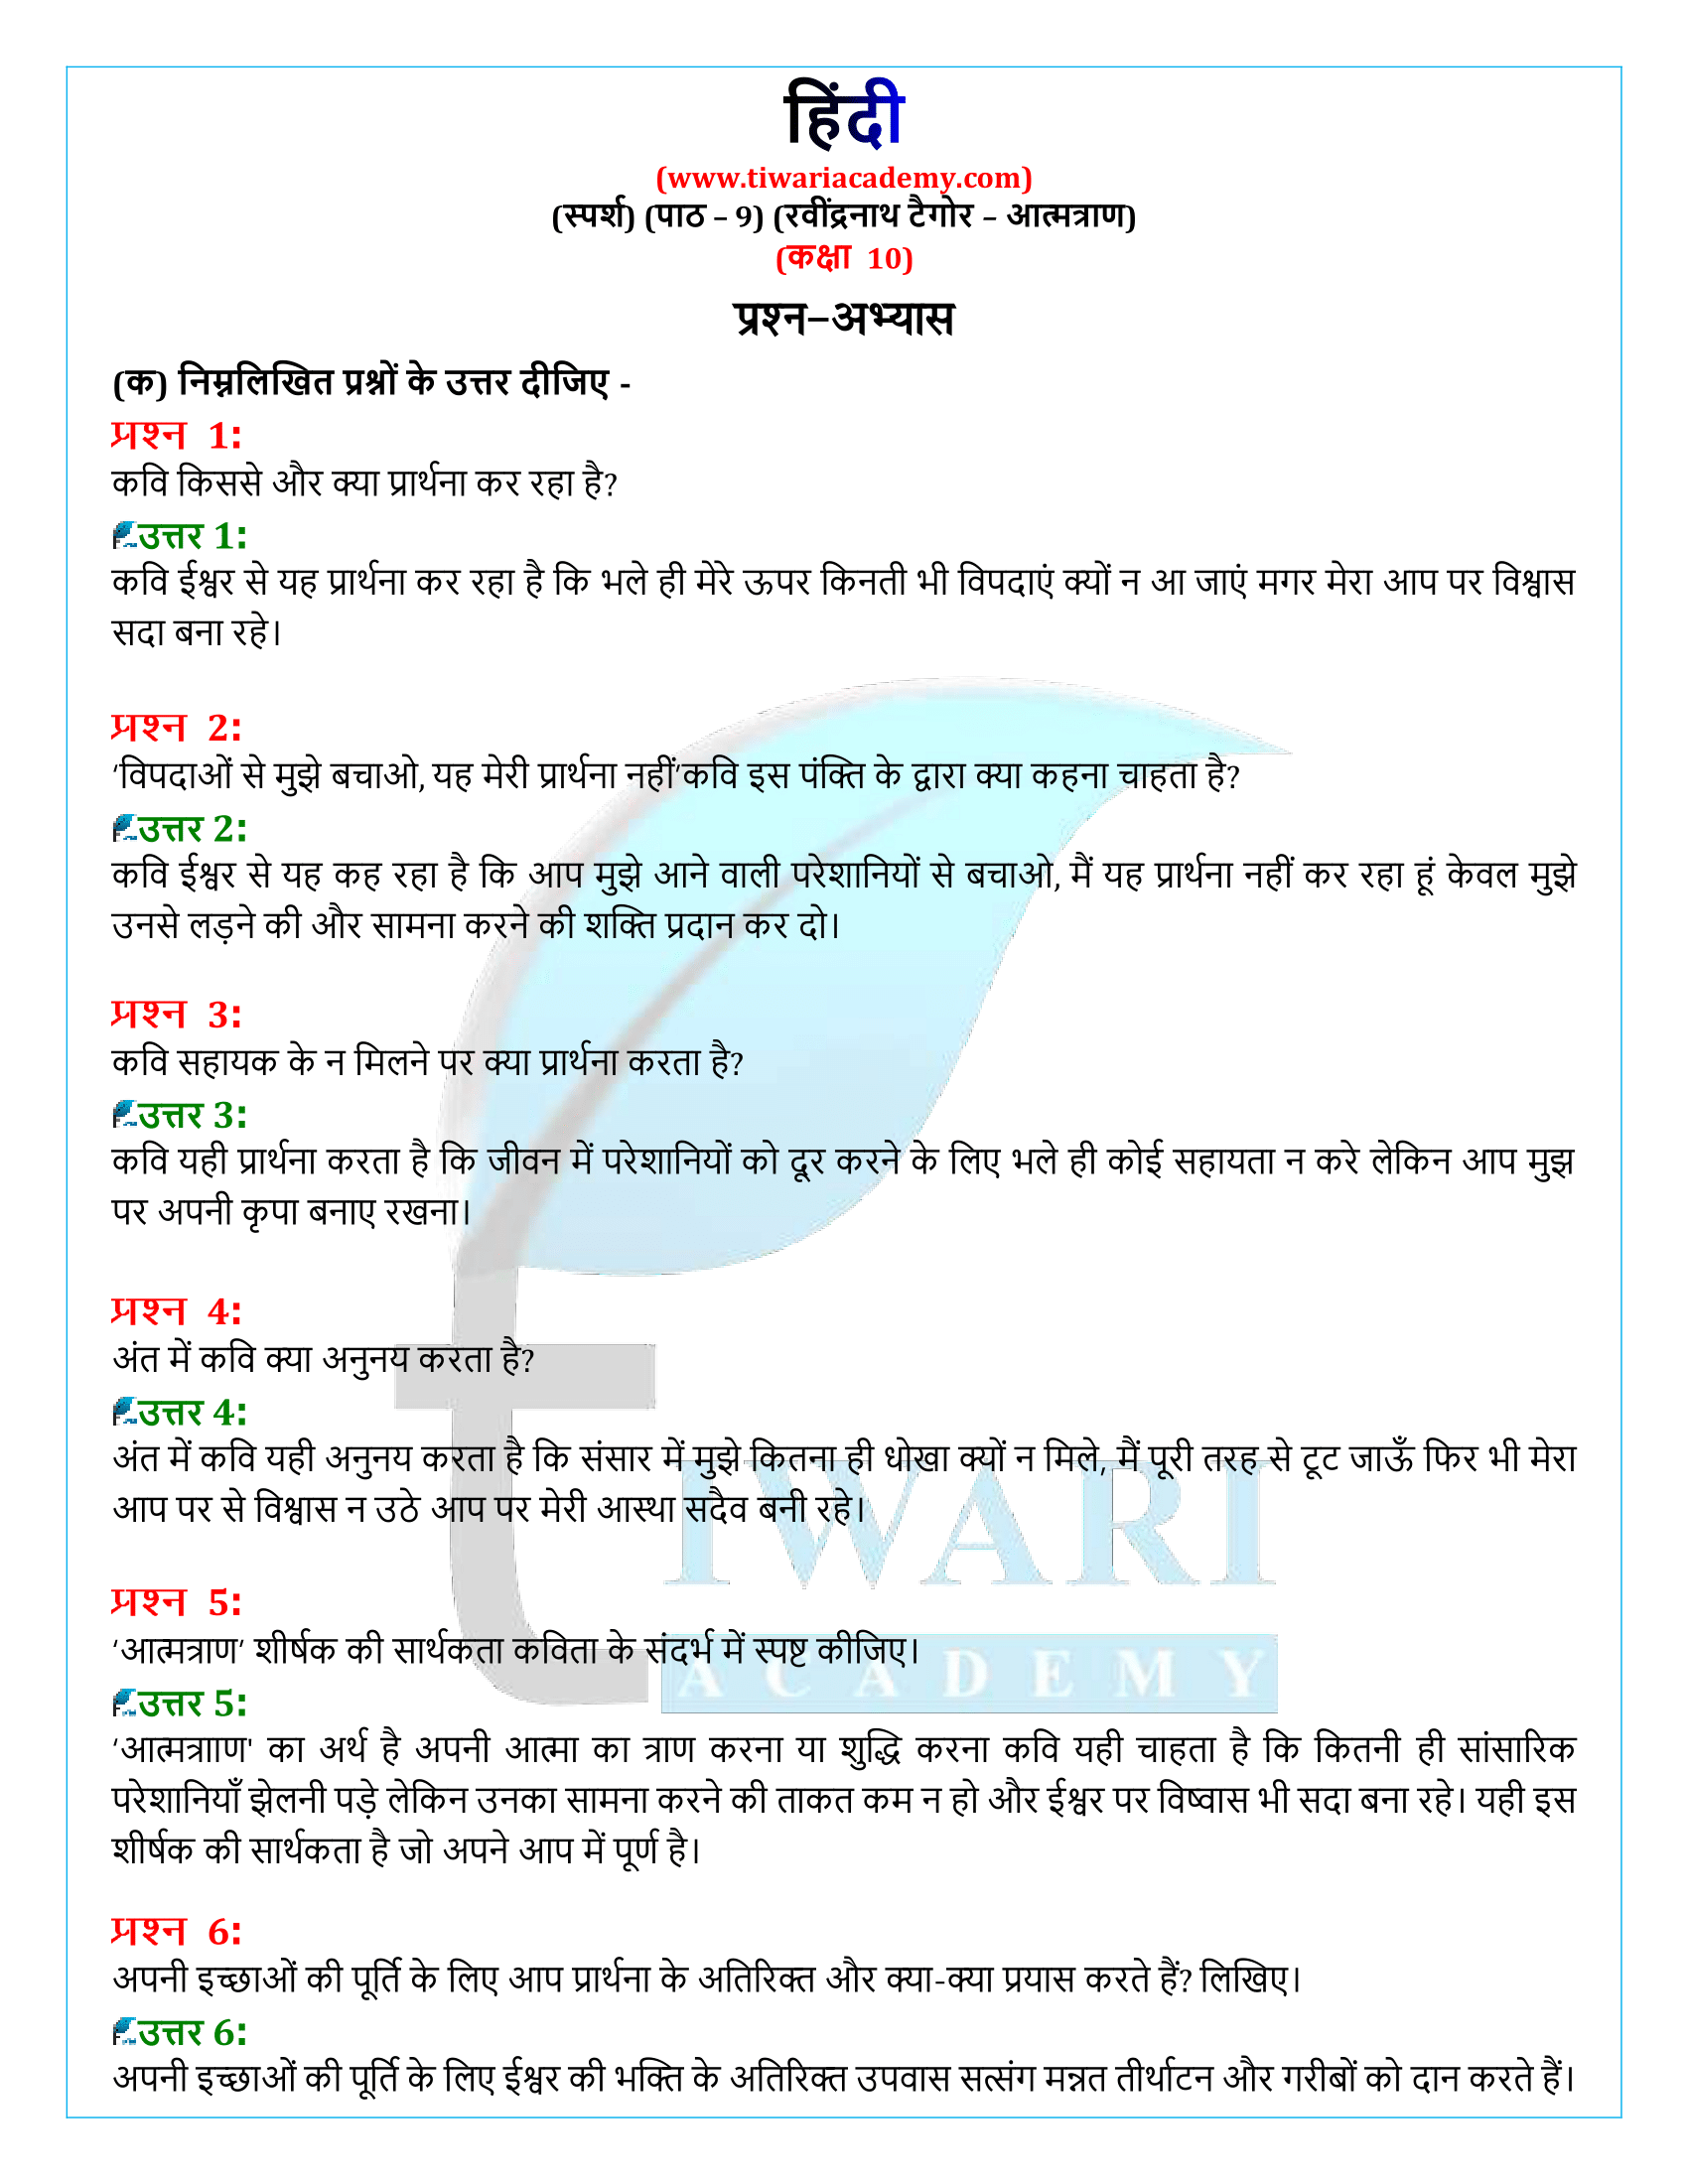 कक्षा 10 हिंदी स्पर्श अध्याय 9 के प्रश्न उत्तर